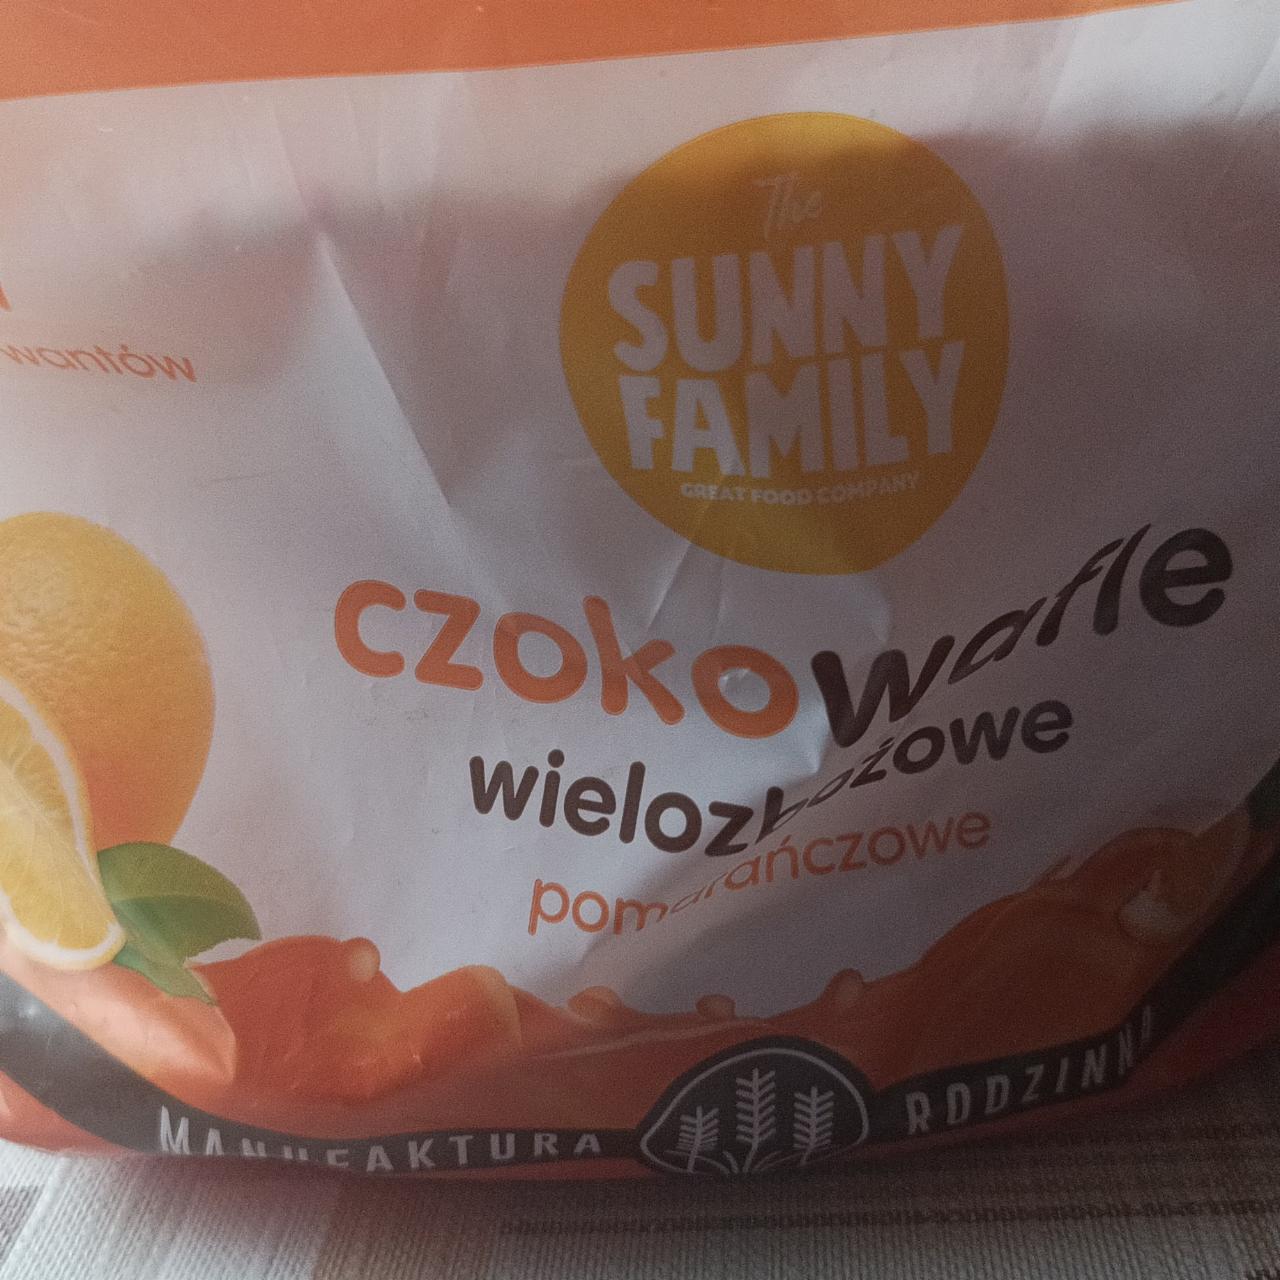 Zdjęcia - Czokowafle wielozbożowe pomarańczowe Sunny Family